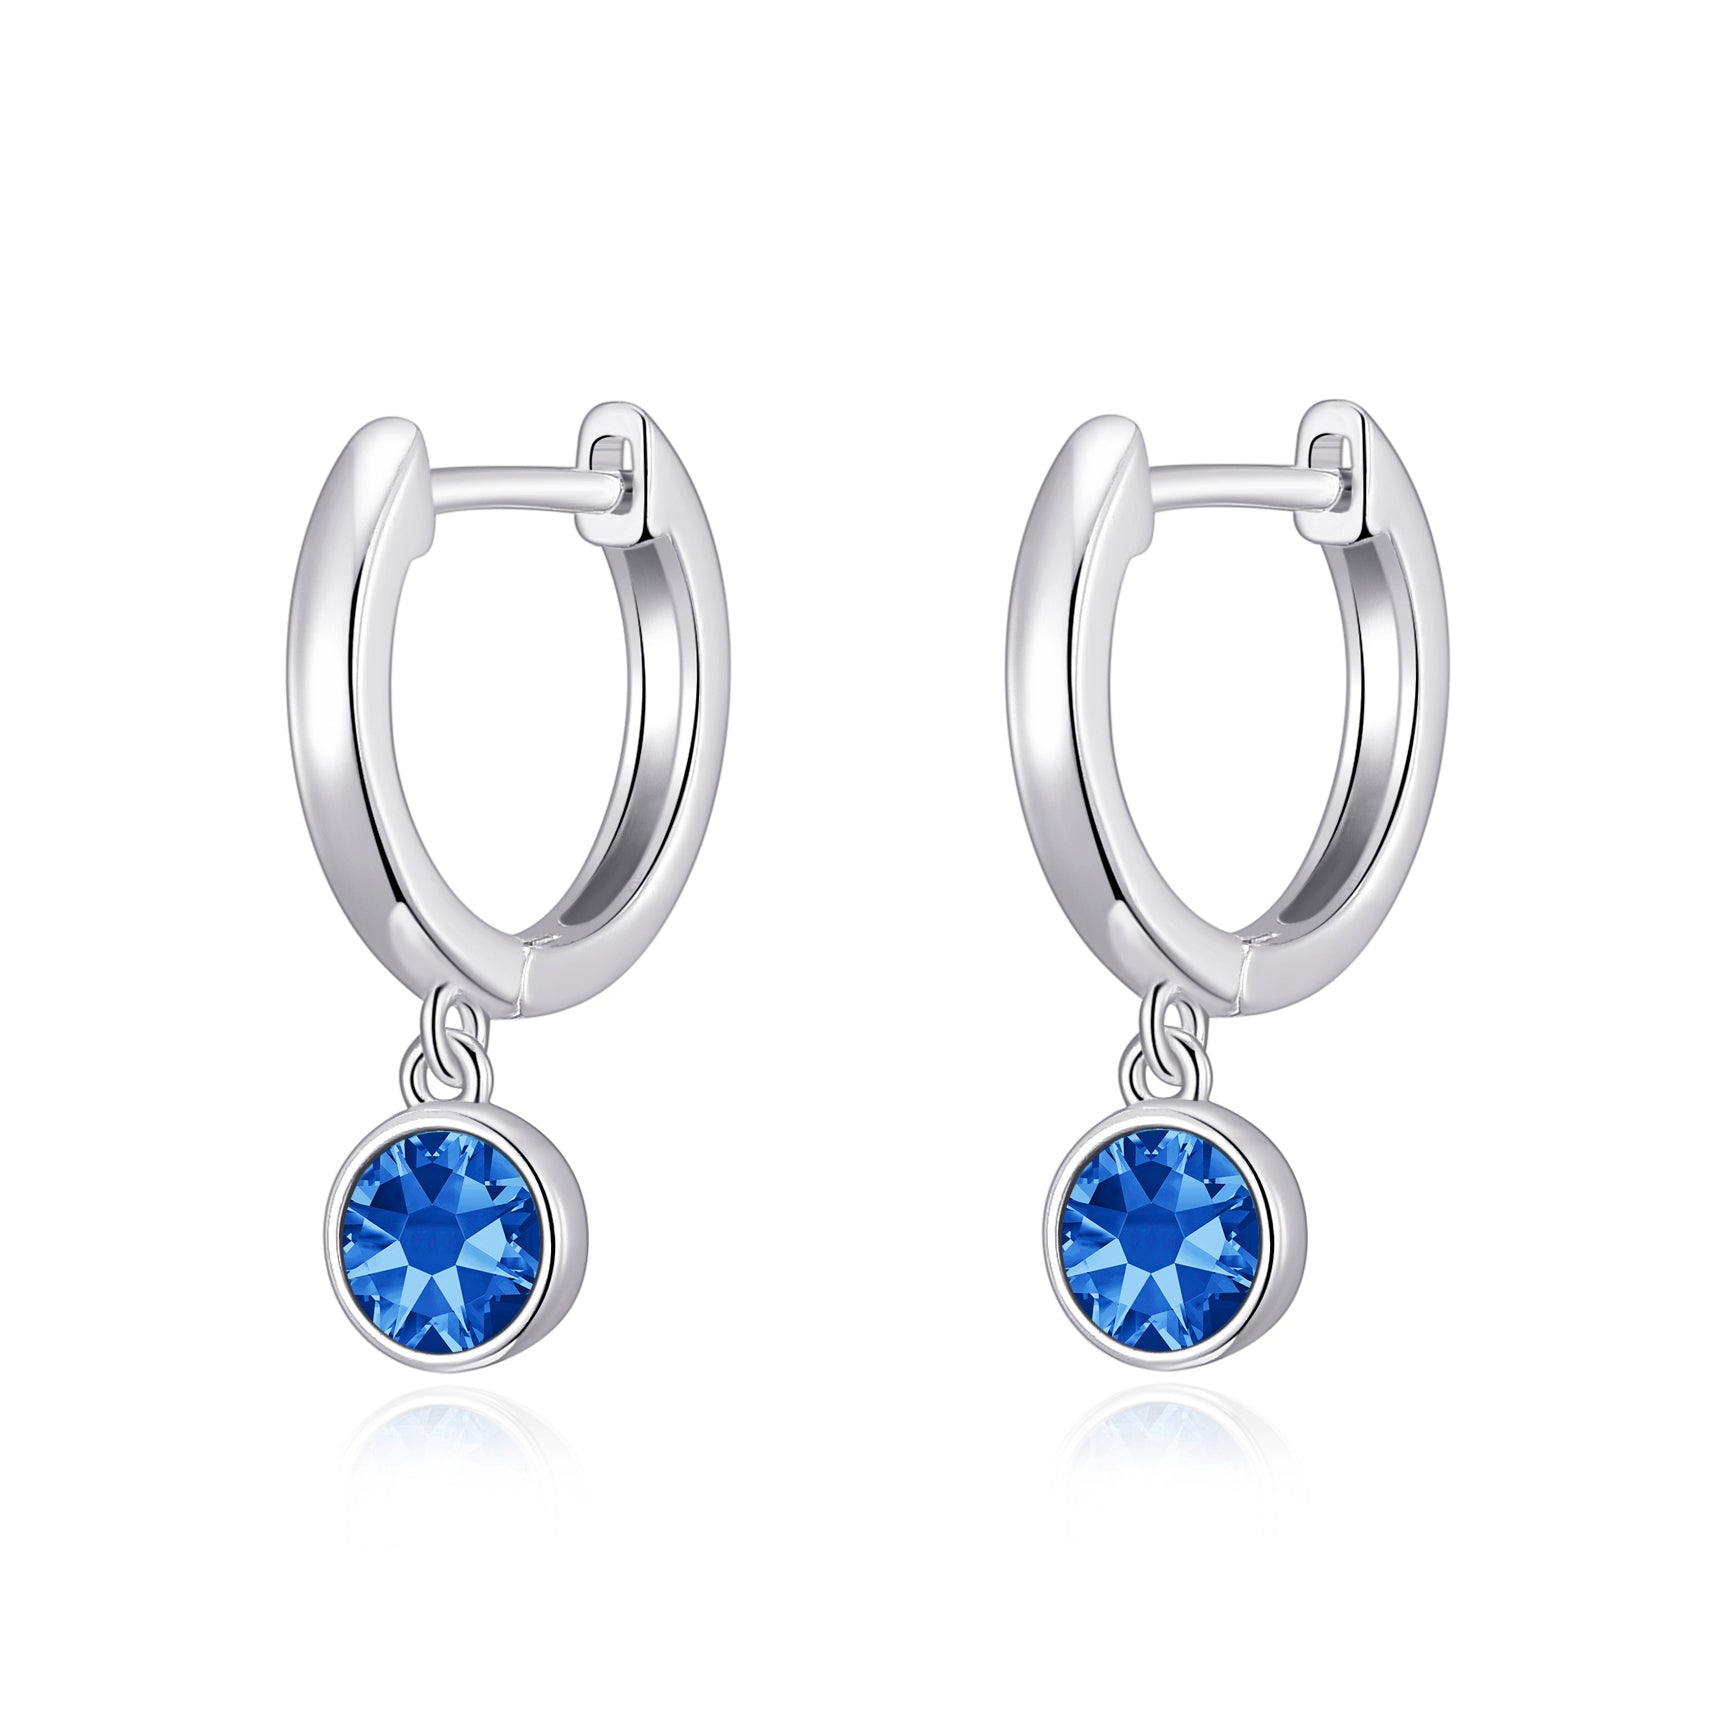 Dark Blue Crystal Hoop Earrings Created with Zircondia® Crystals by Philip Jones Jewellery